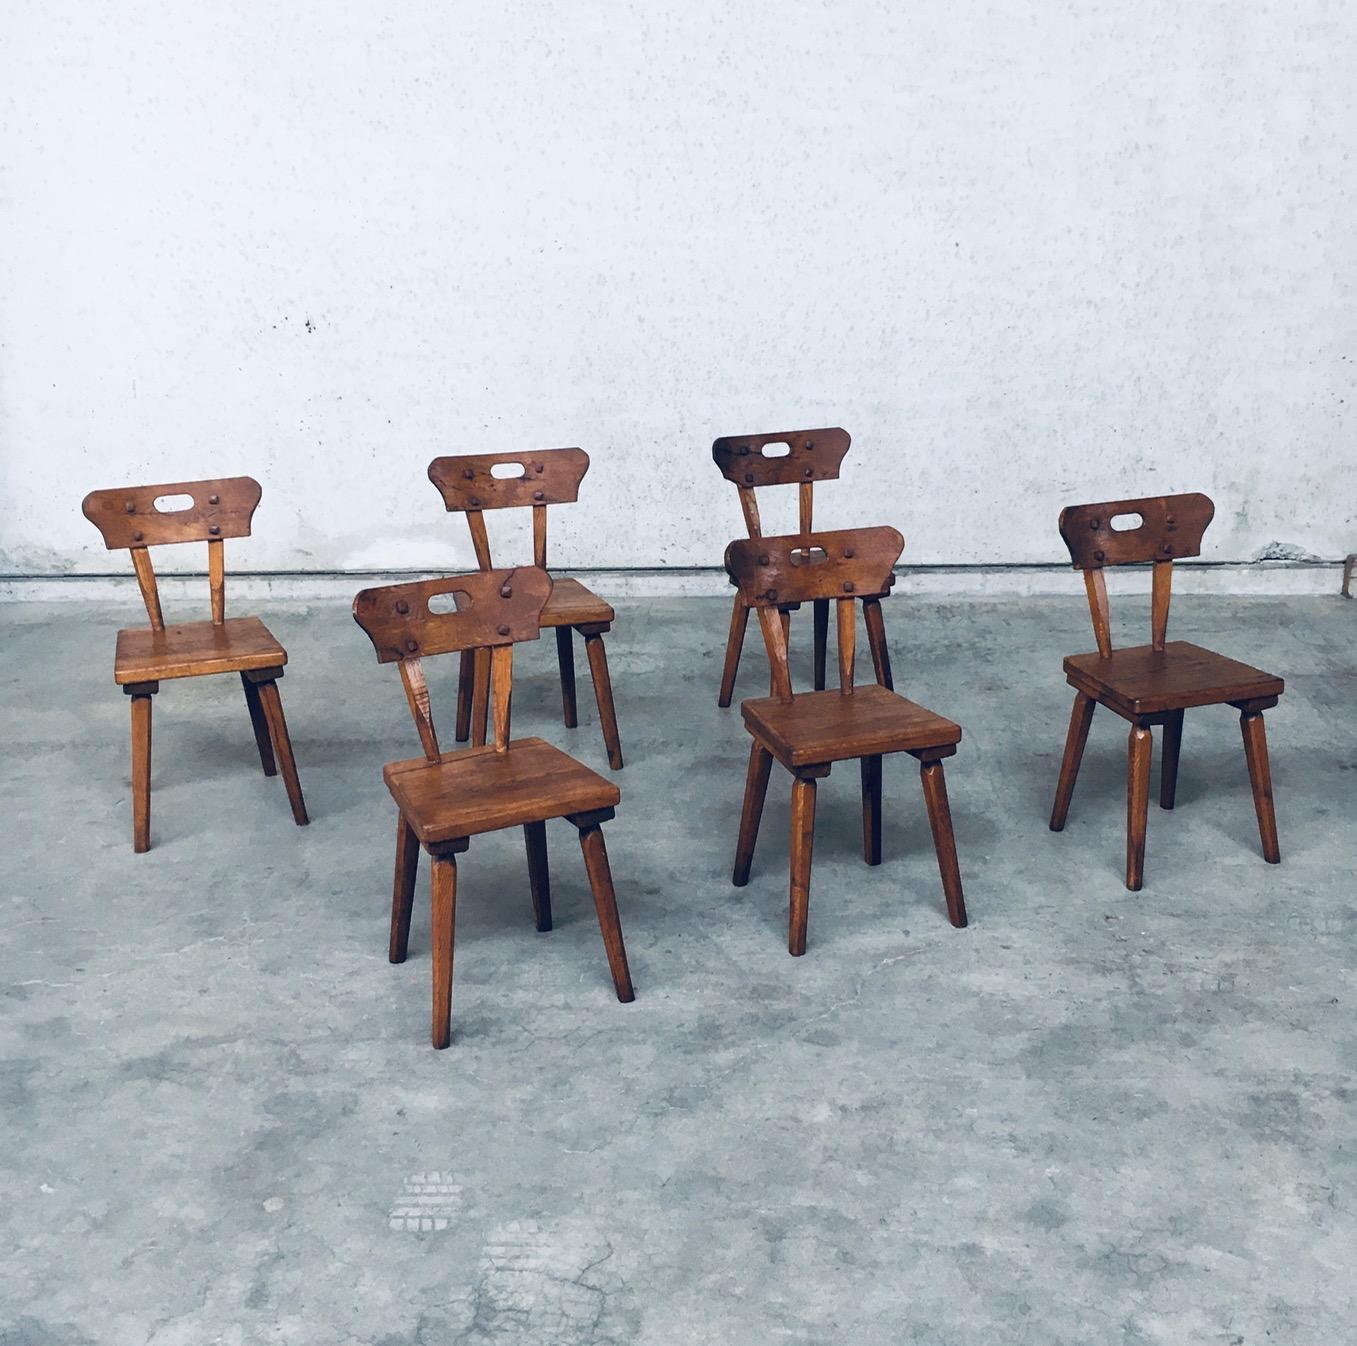 Vintage Handcrafted Folk Art Rustic Oak Dining Chair set of 6. Fabriqué en France, période des années 1940. Ensemble de chaises de salle à manger en chêne massif sculpté et fabriqué à la main. Toutes les chaises sont en très bon état pour leur âge